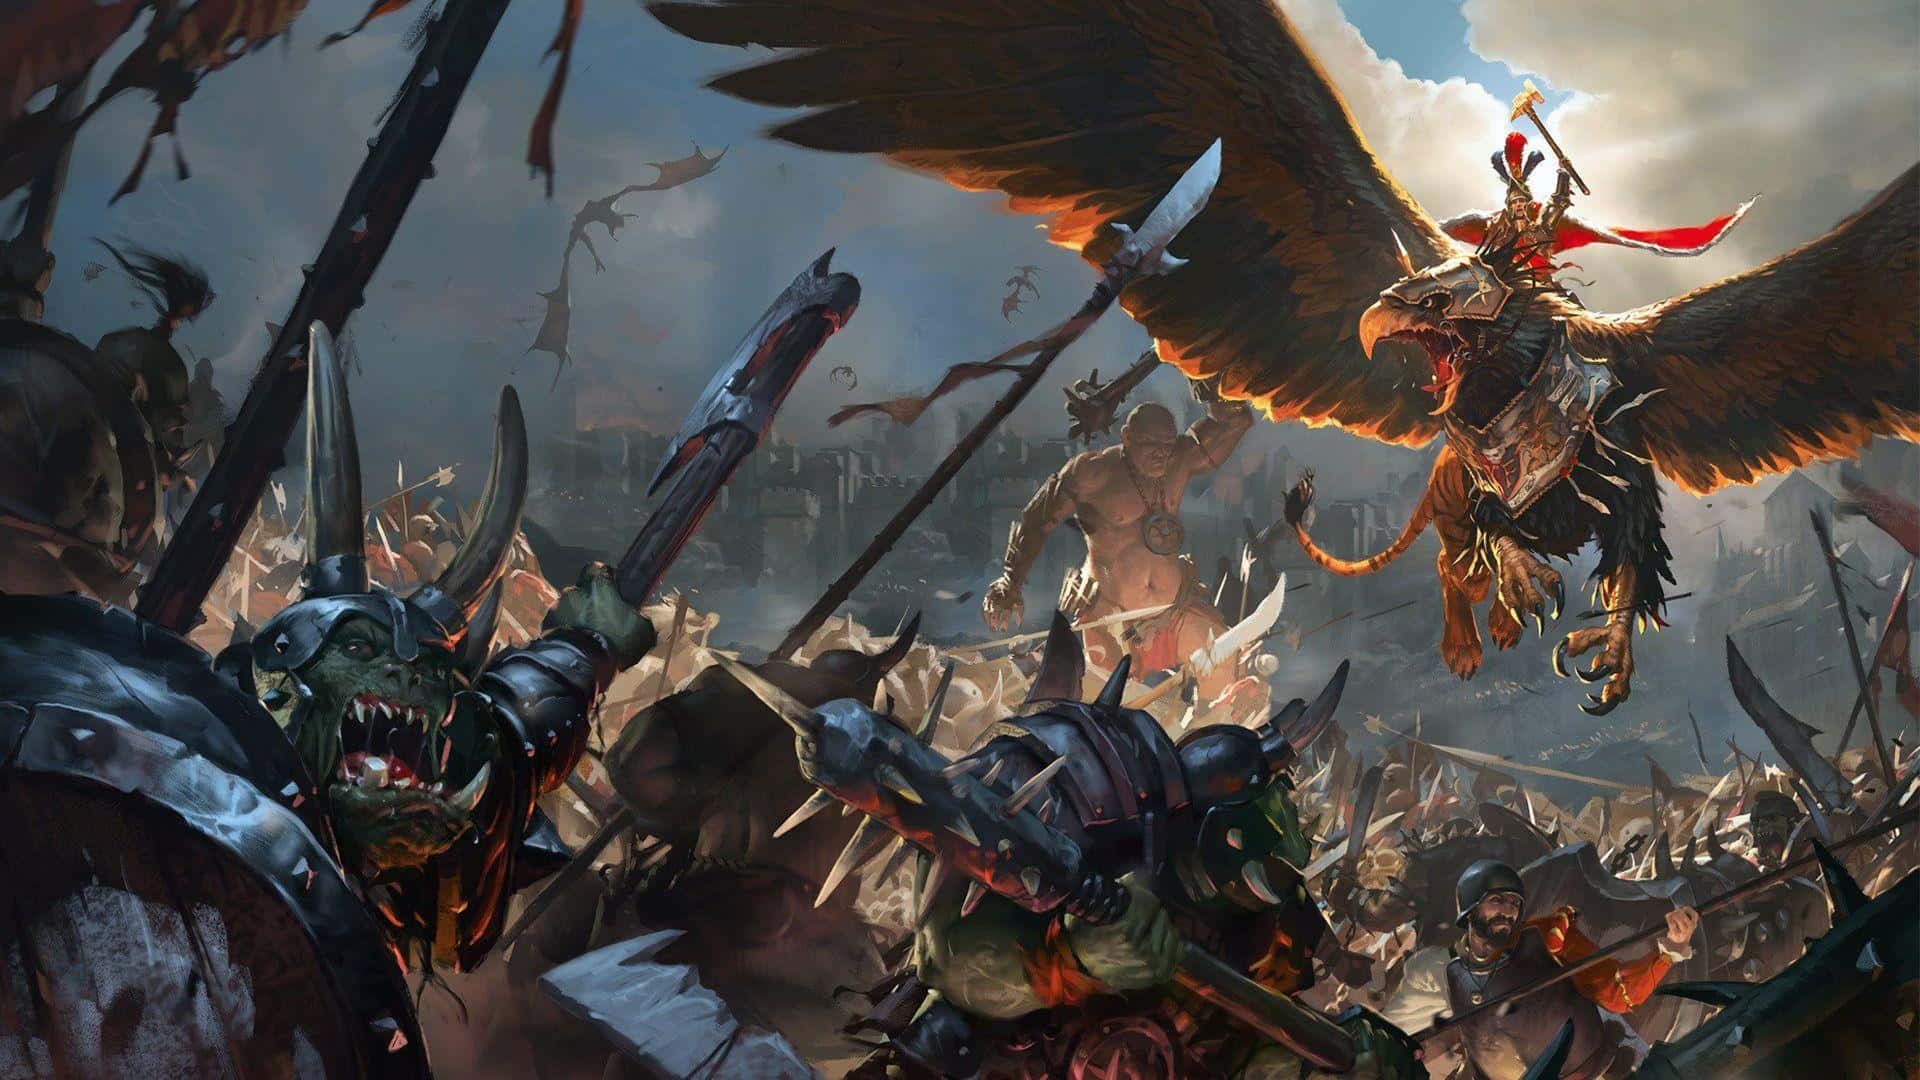 Prendiil Comando Del Tuo Esercito E Scatena Il Potere Di Un Dio Con Total War Warhammer Ii In Hd.